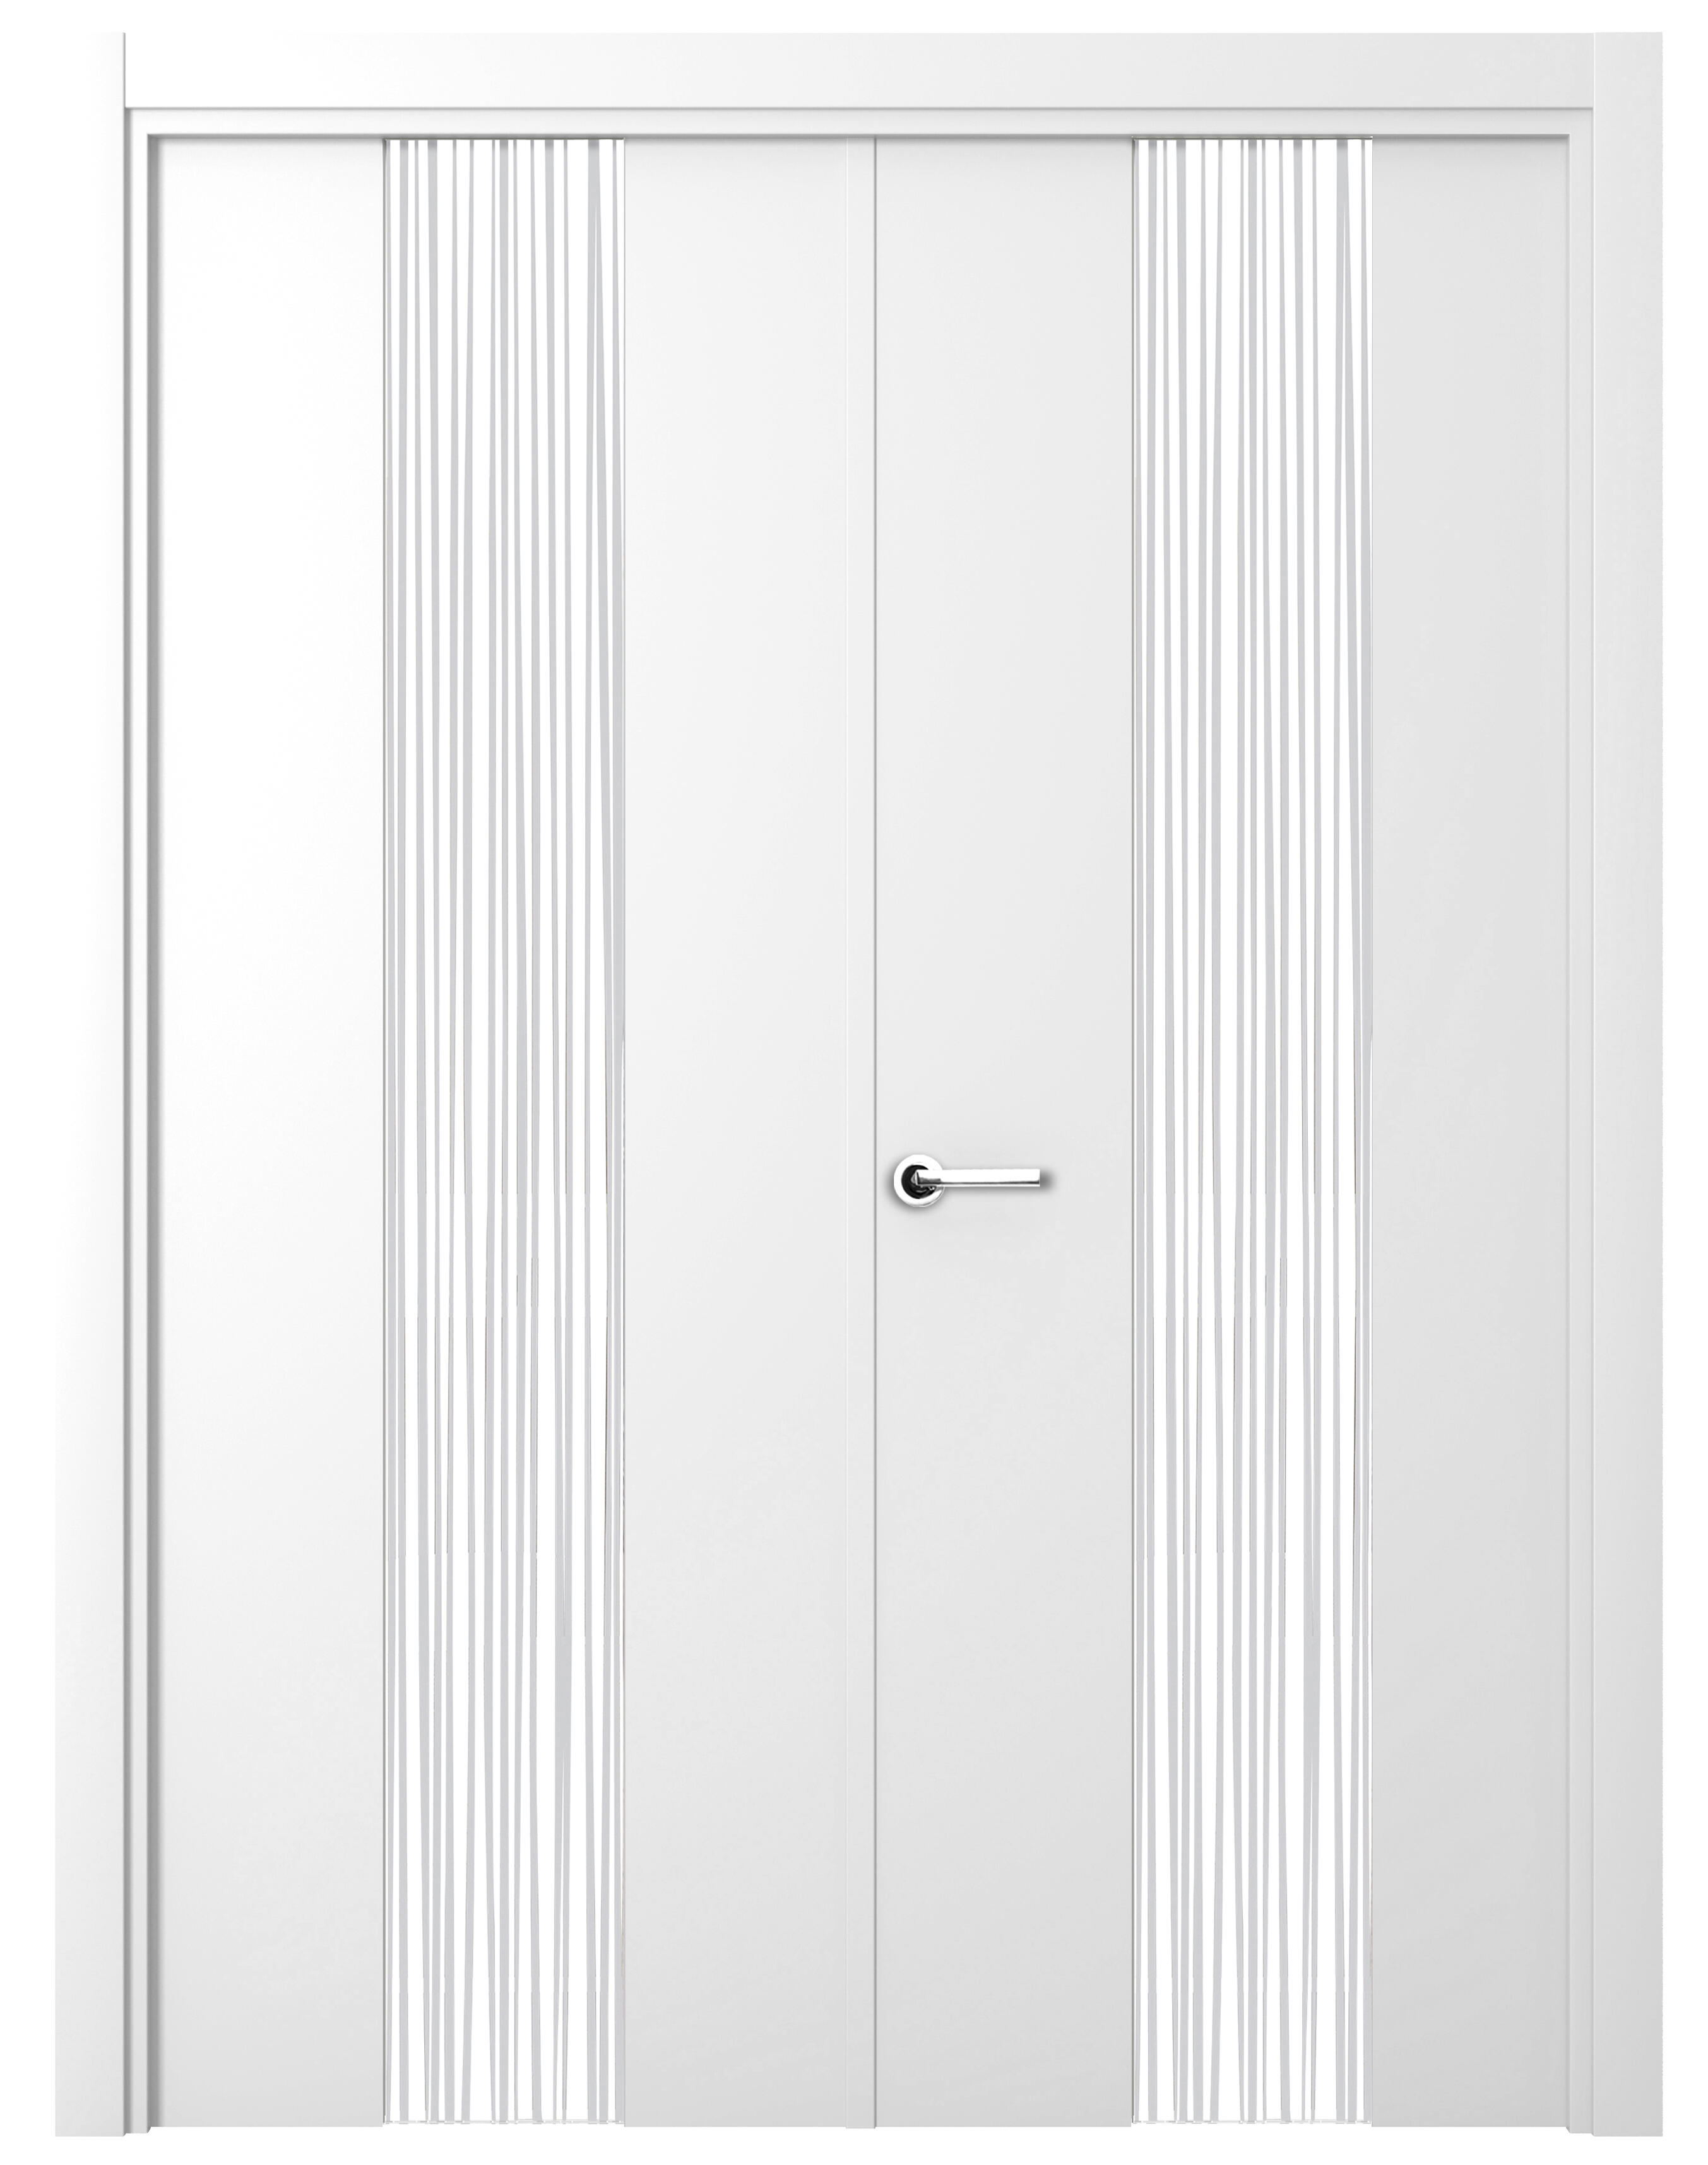 Puerta quevedo premium blanco apertura derecha con cristal 9x145cm